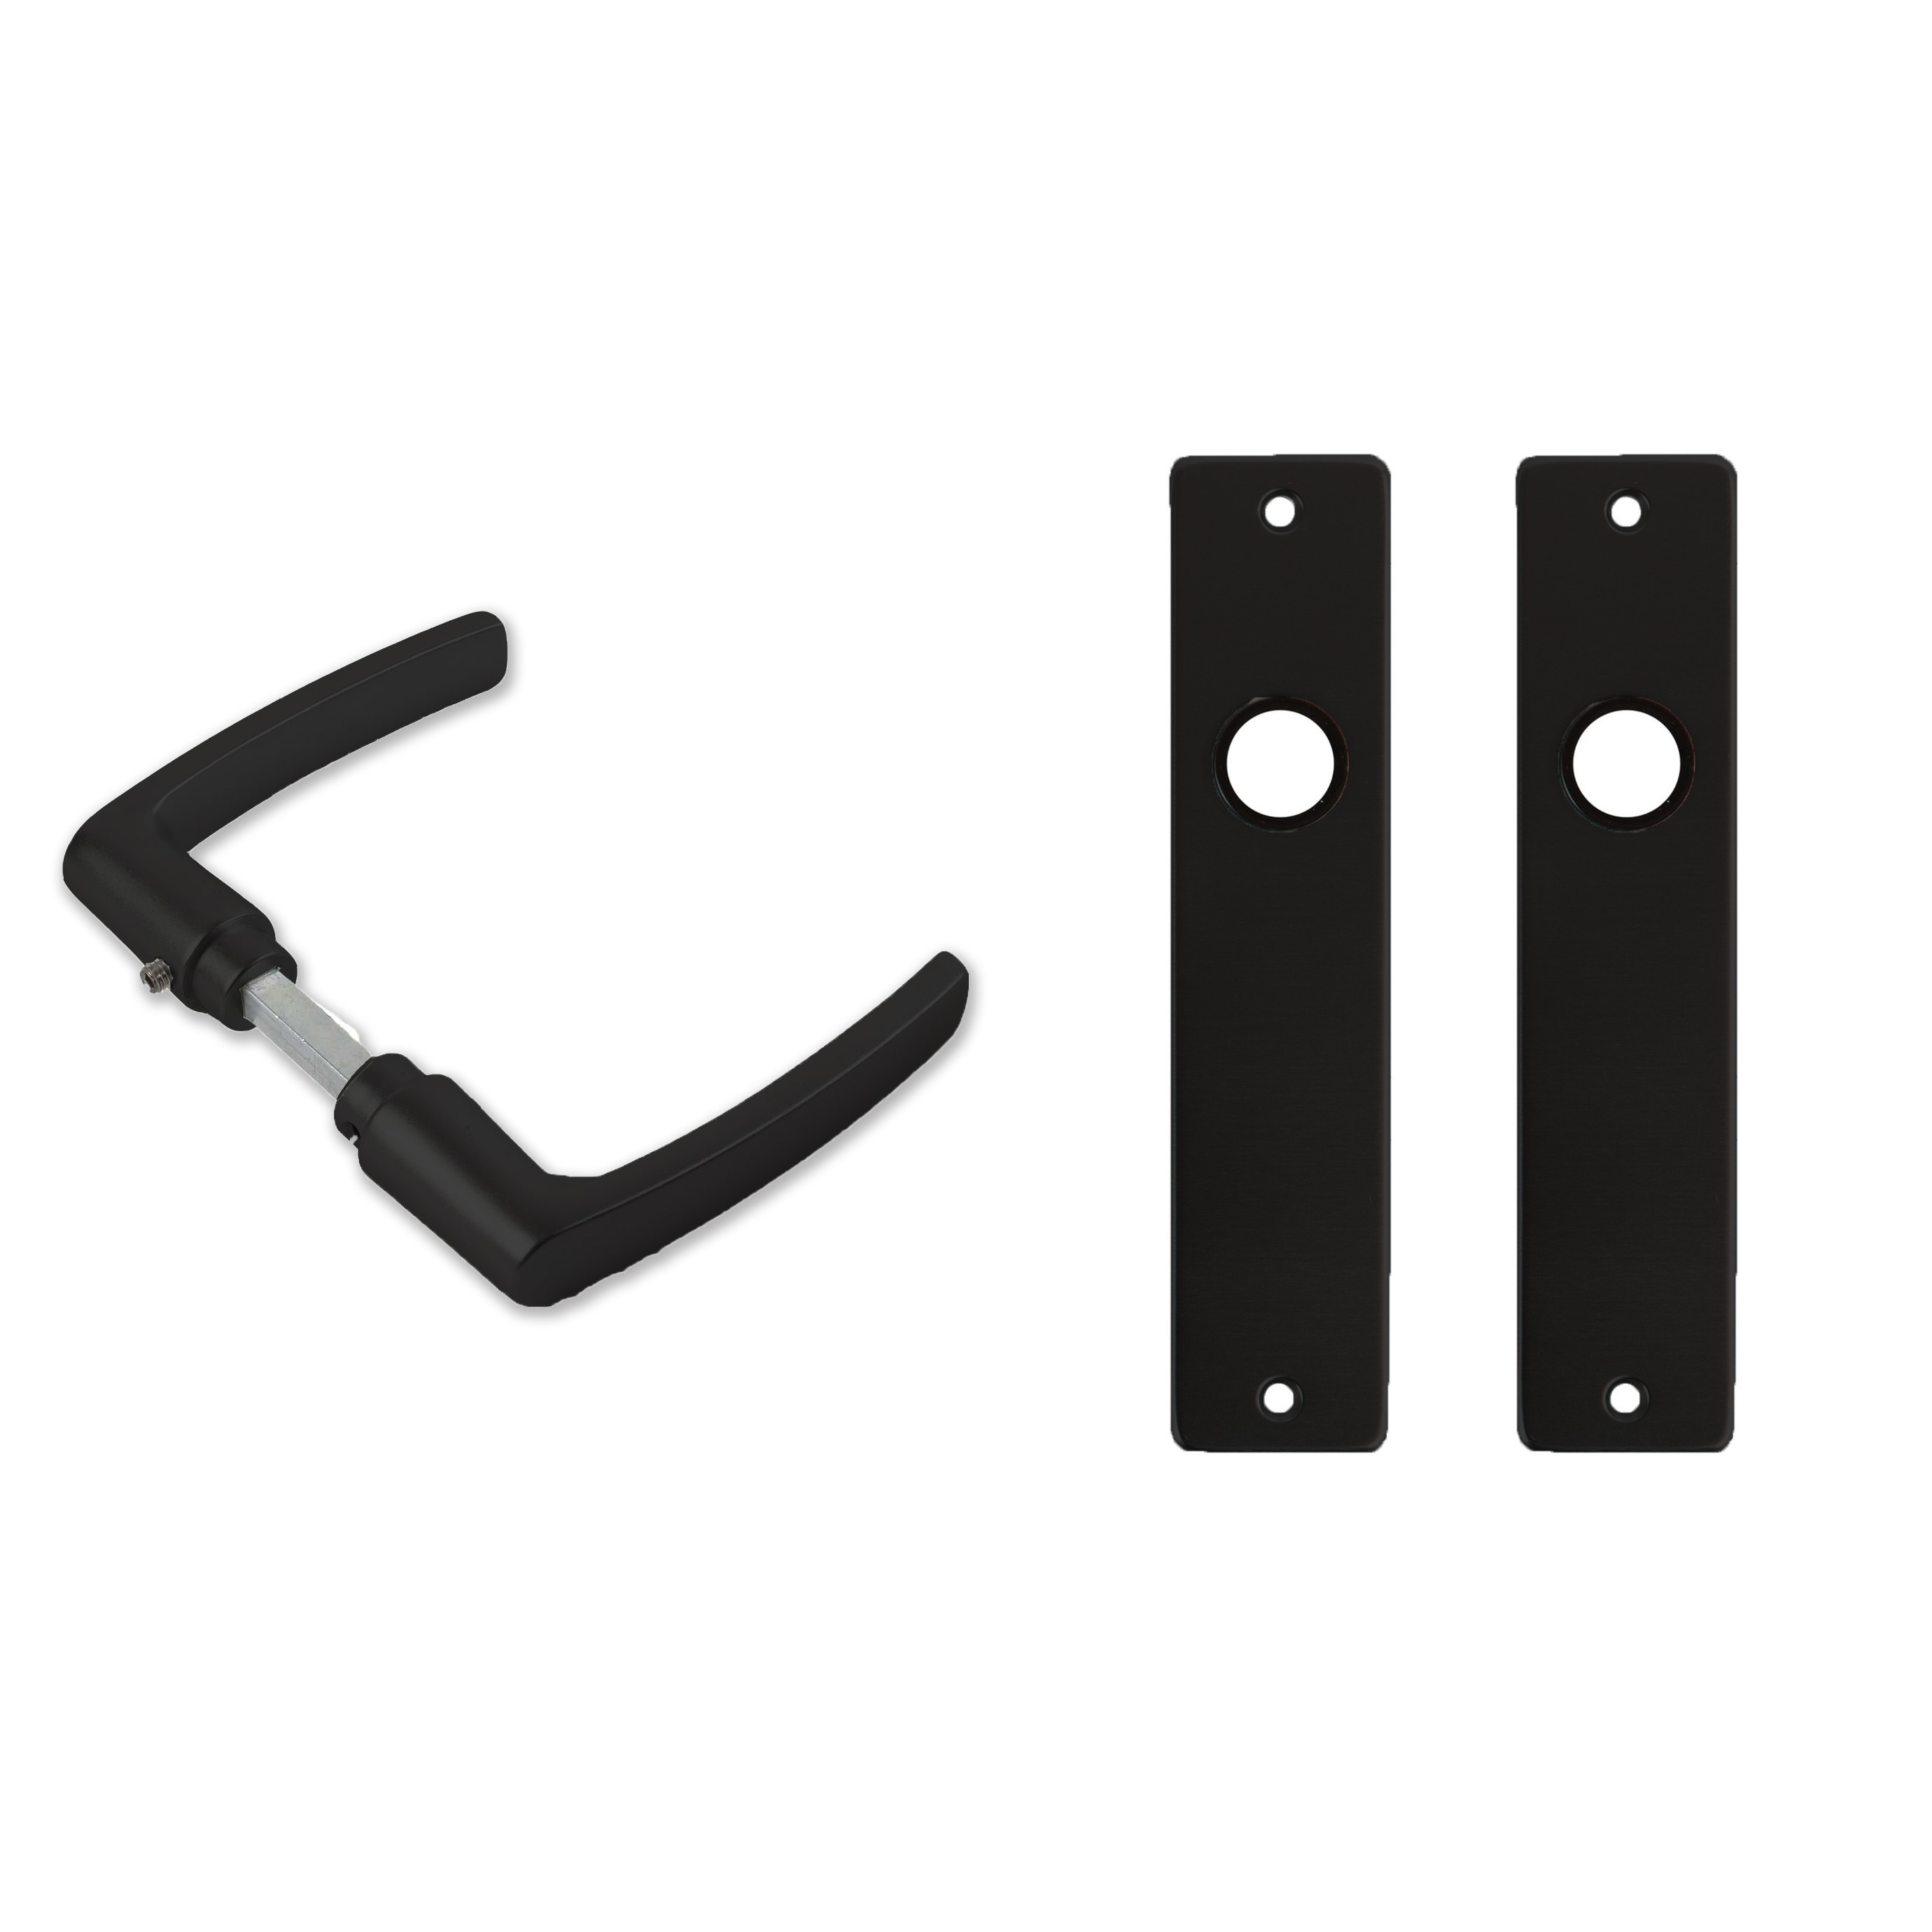 4x paar deurkrukset-deurgarnituur zwart met zwarte blokmodel deurklinken en deurschilden